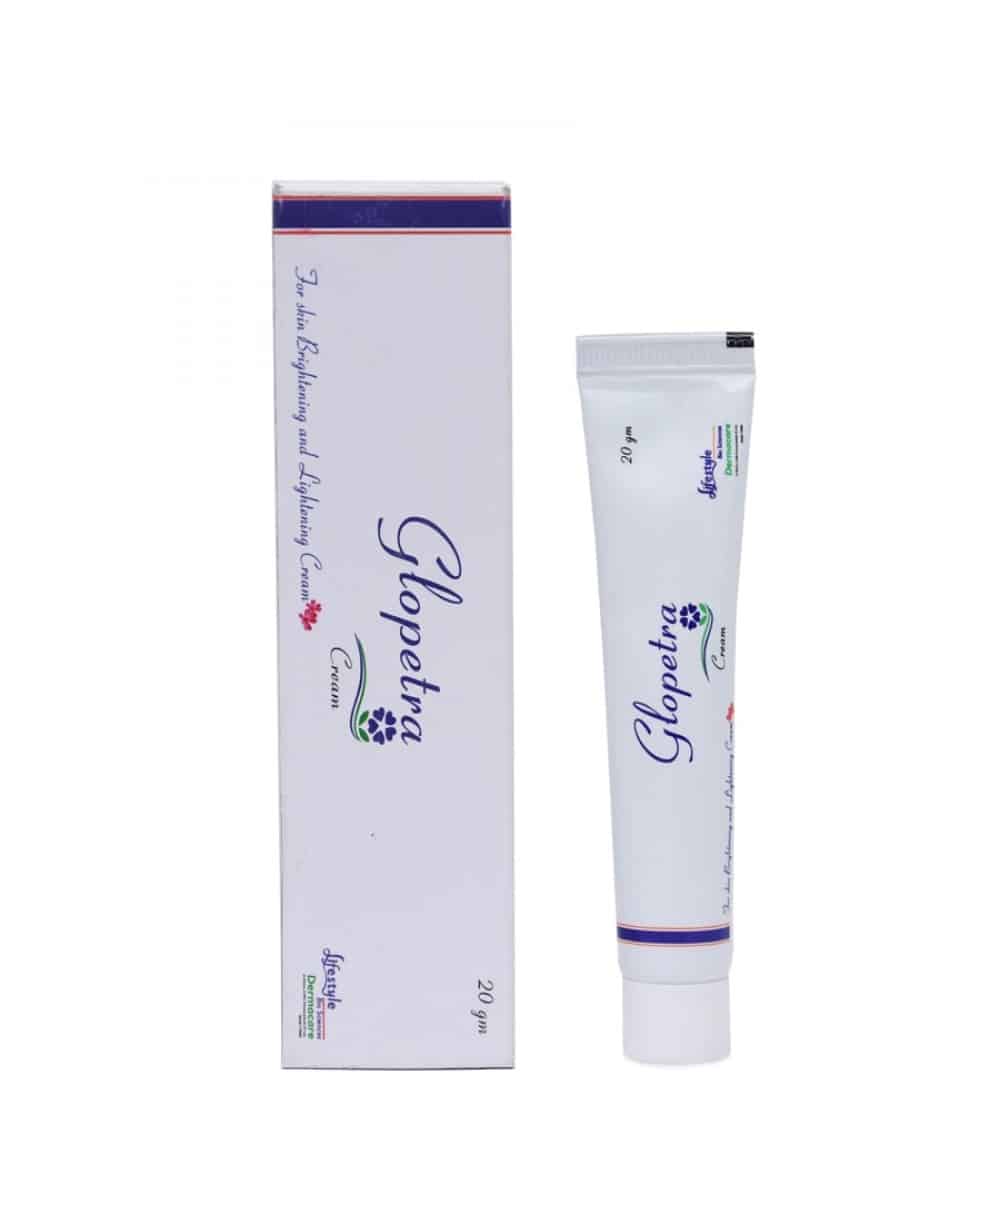 Glopetra Cream (For Skin Whitening and Skin Brightening)